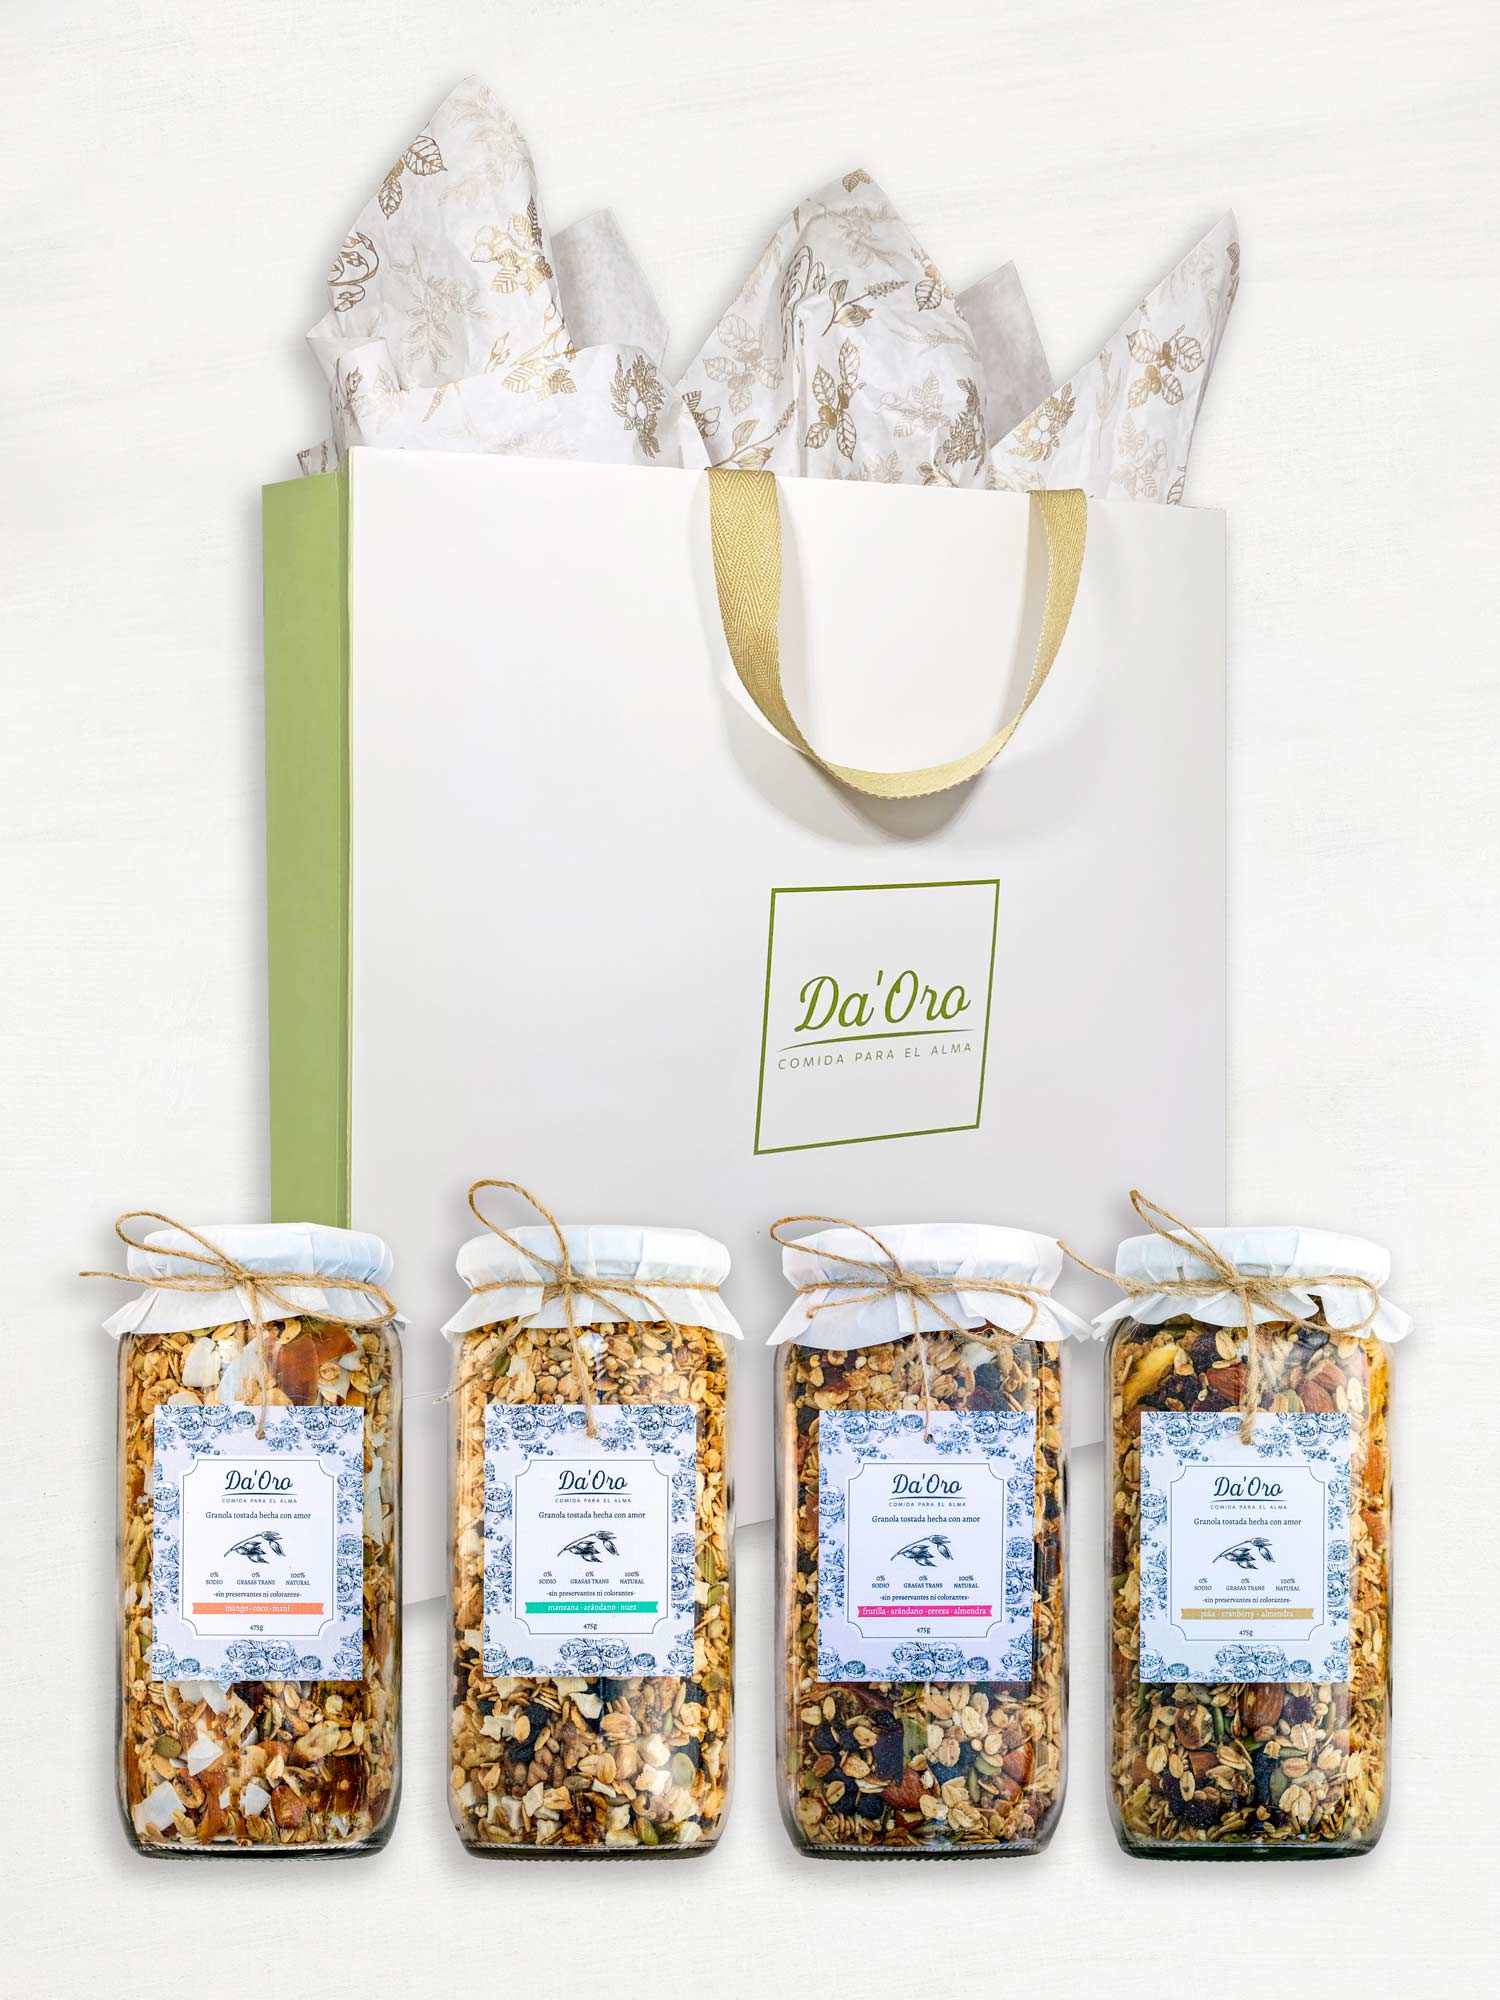 Bolsa de regalo marca Da'Oro con cuatro frascos de granola